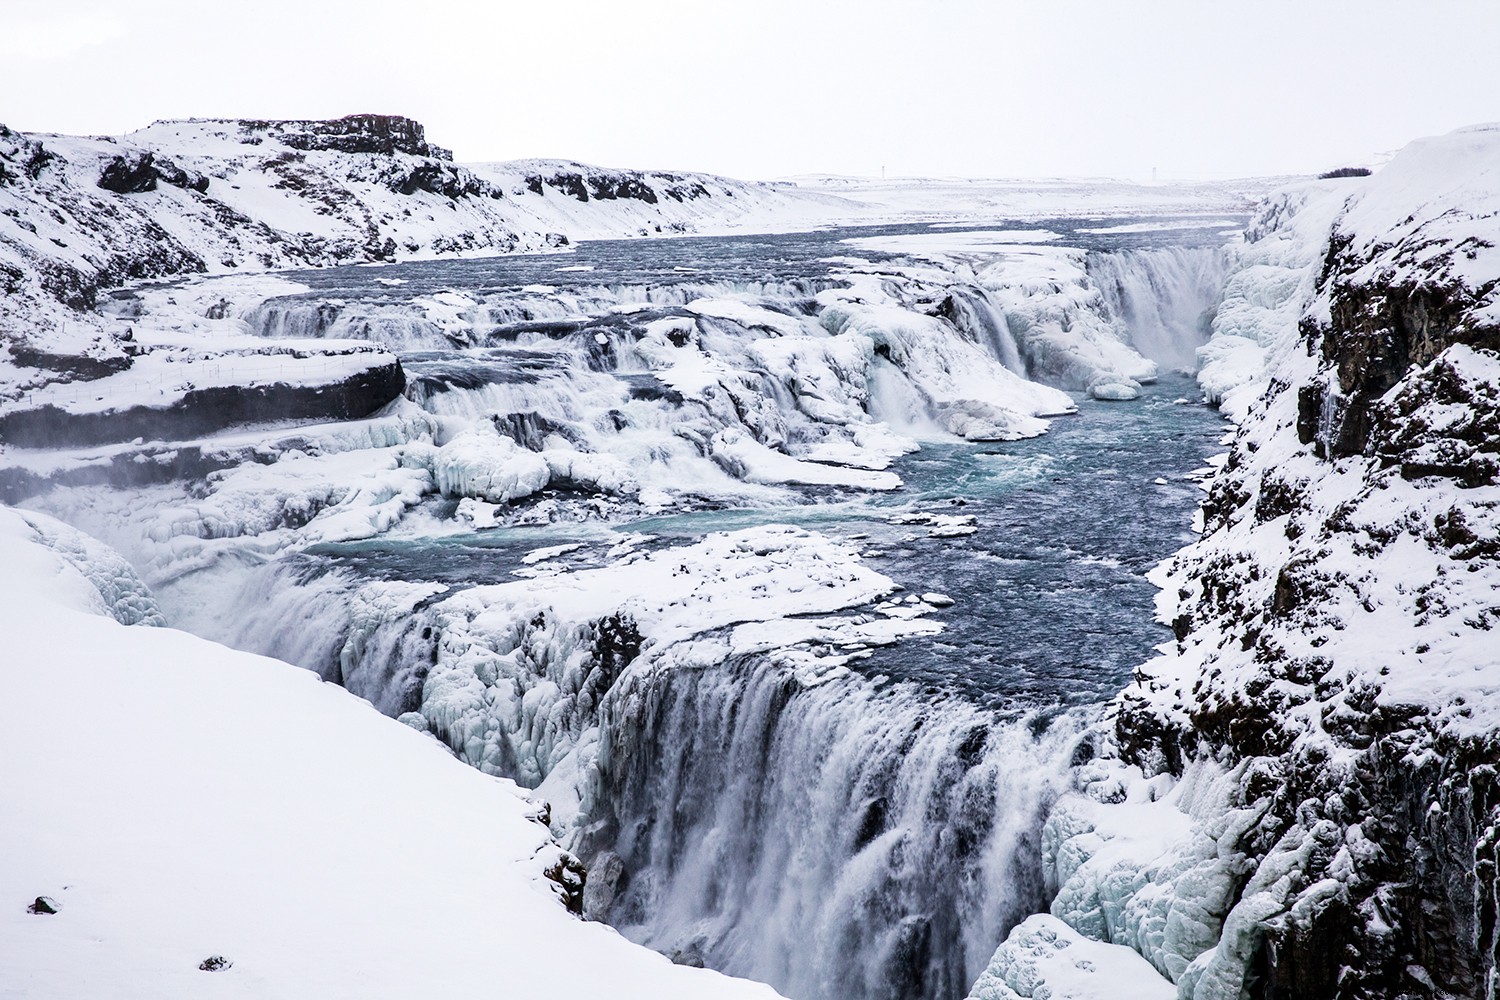 Islandia en invierno ... ¿Vale la pena? Absolutamente. 